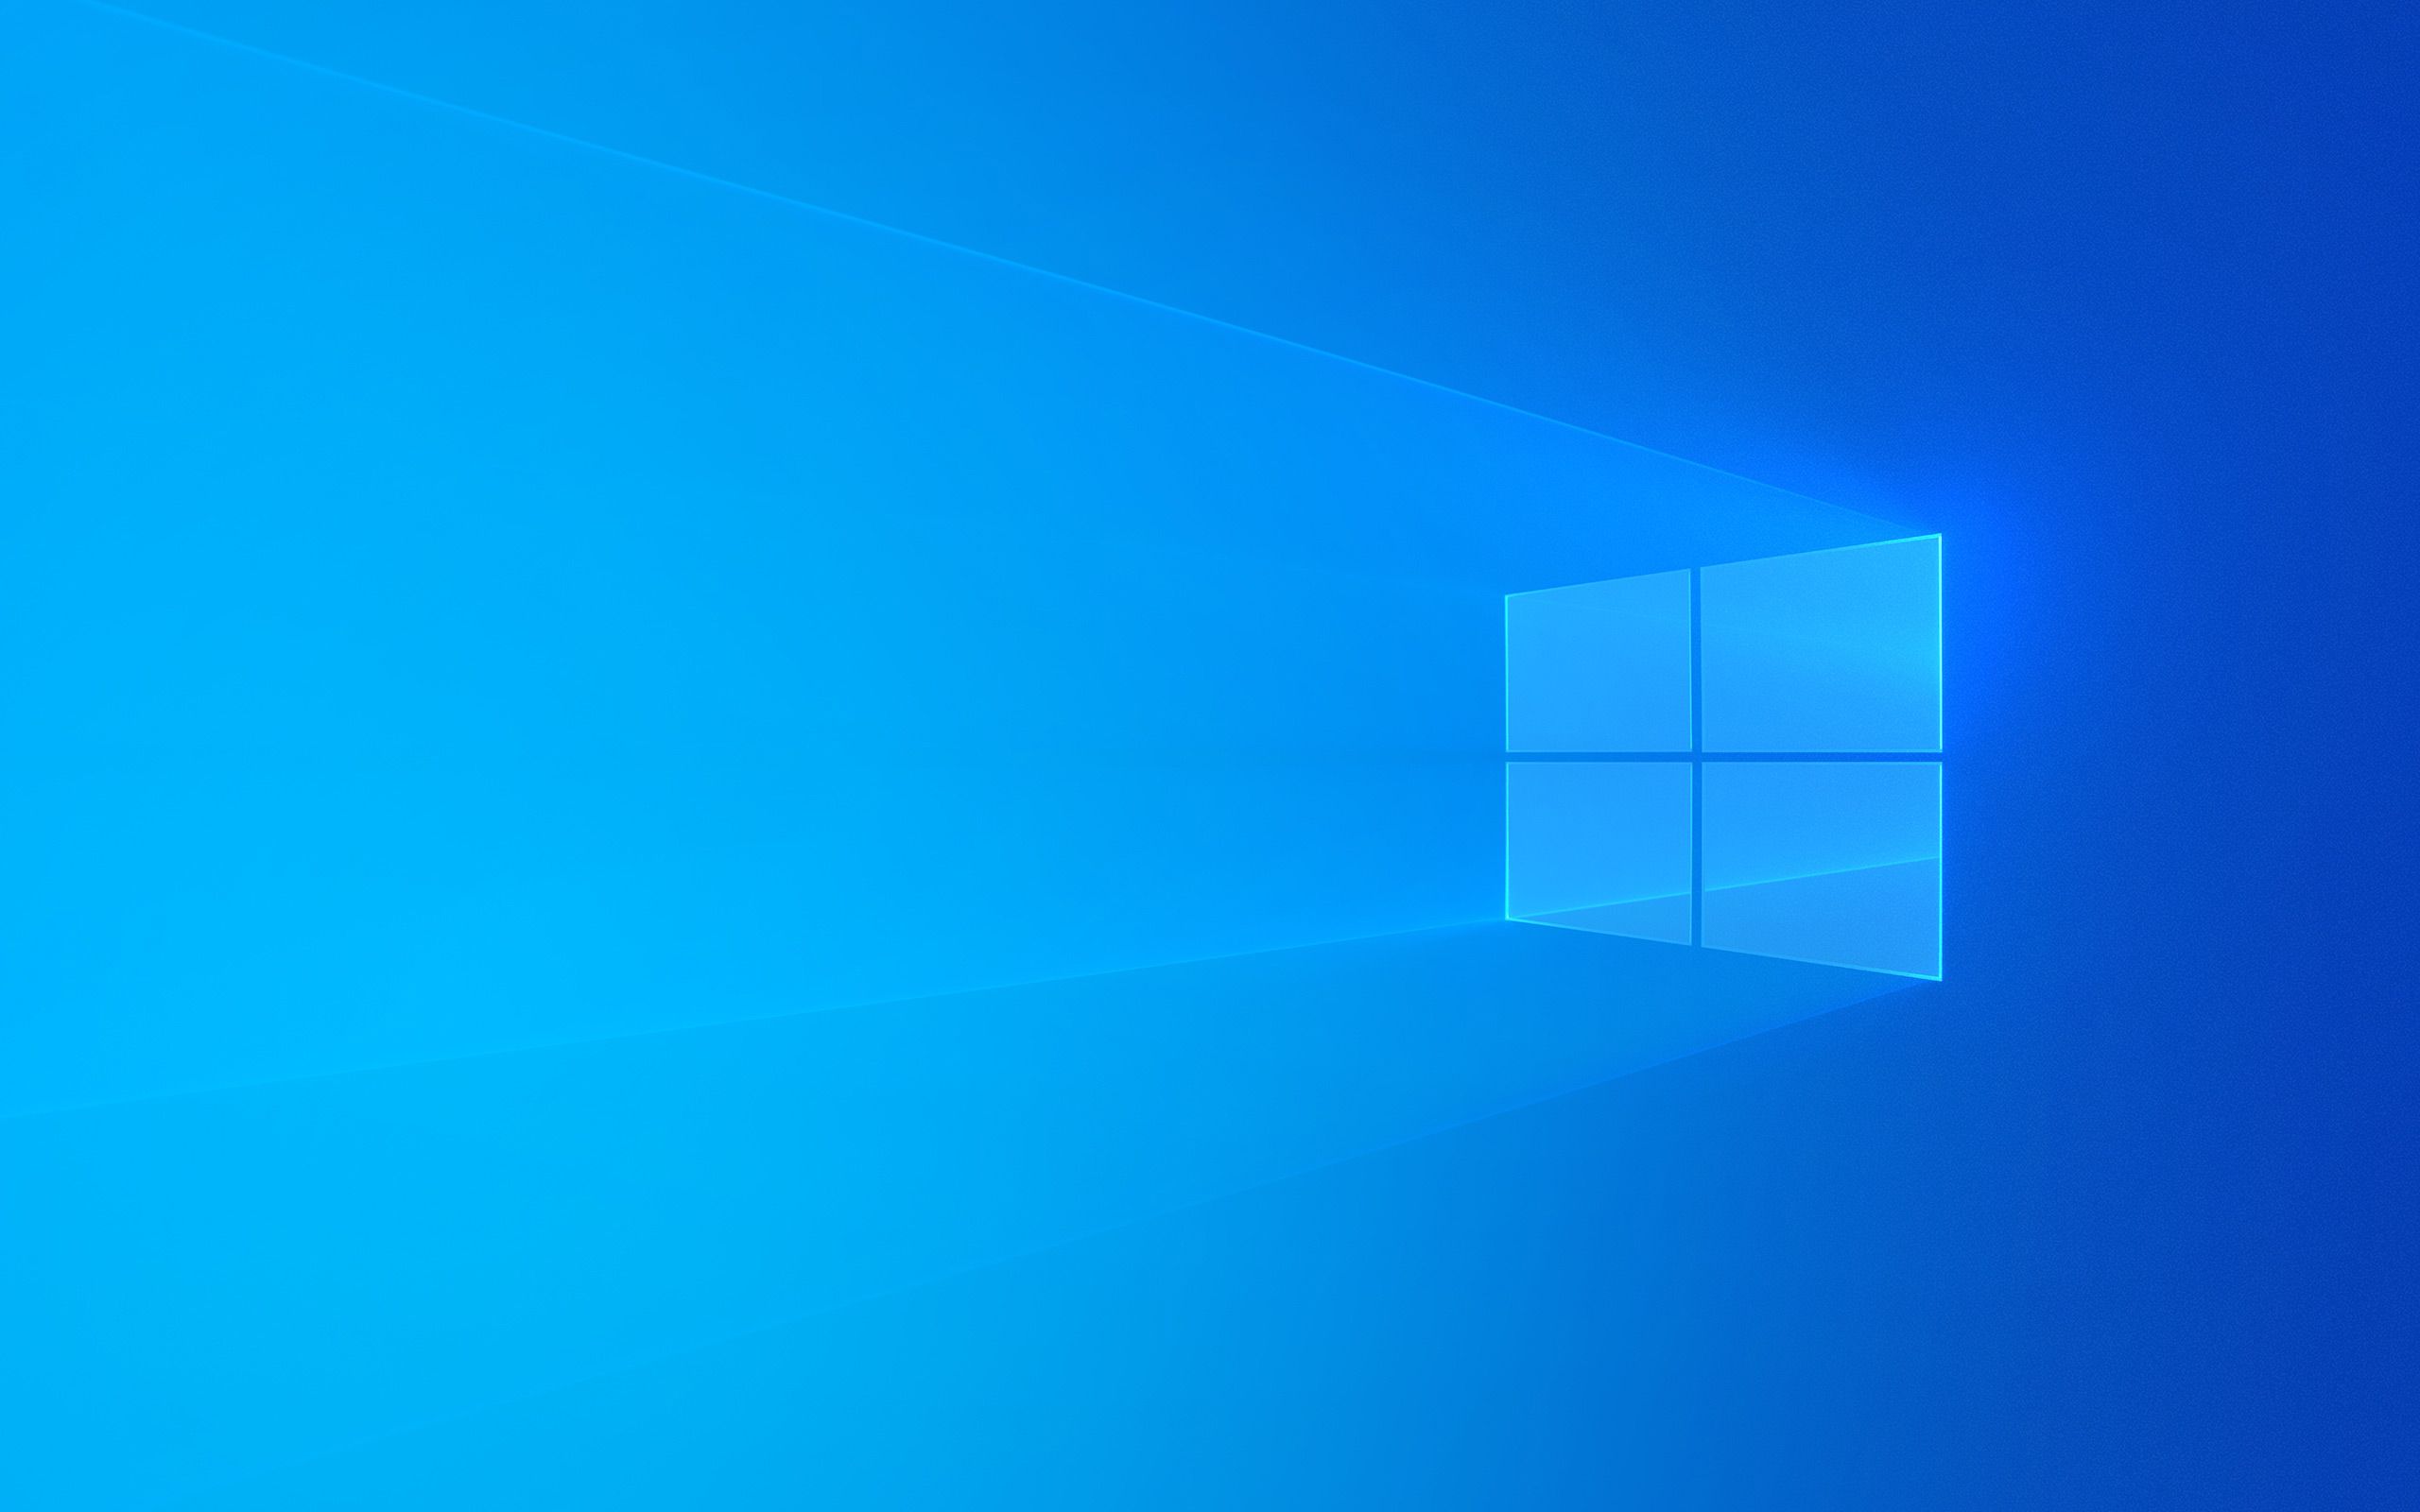  Windows Hintergrundbild 2560x1600. Windows 10: Standard Wallpaper Für Den Desktop (Hero Hintergrundbild)